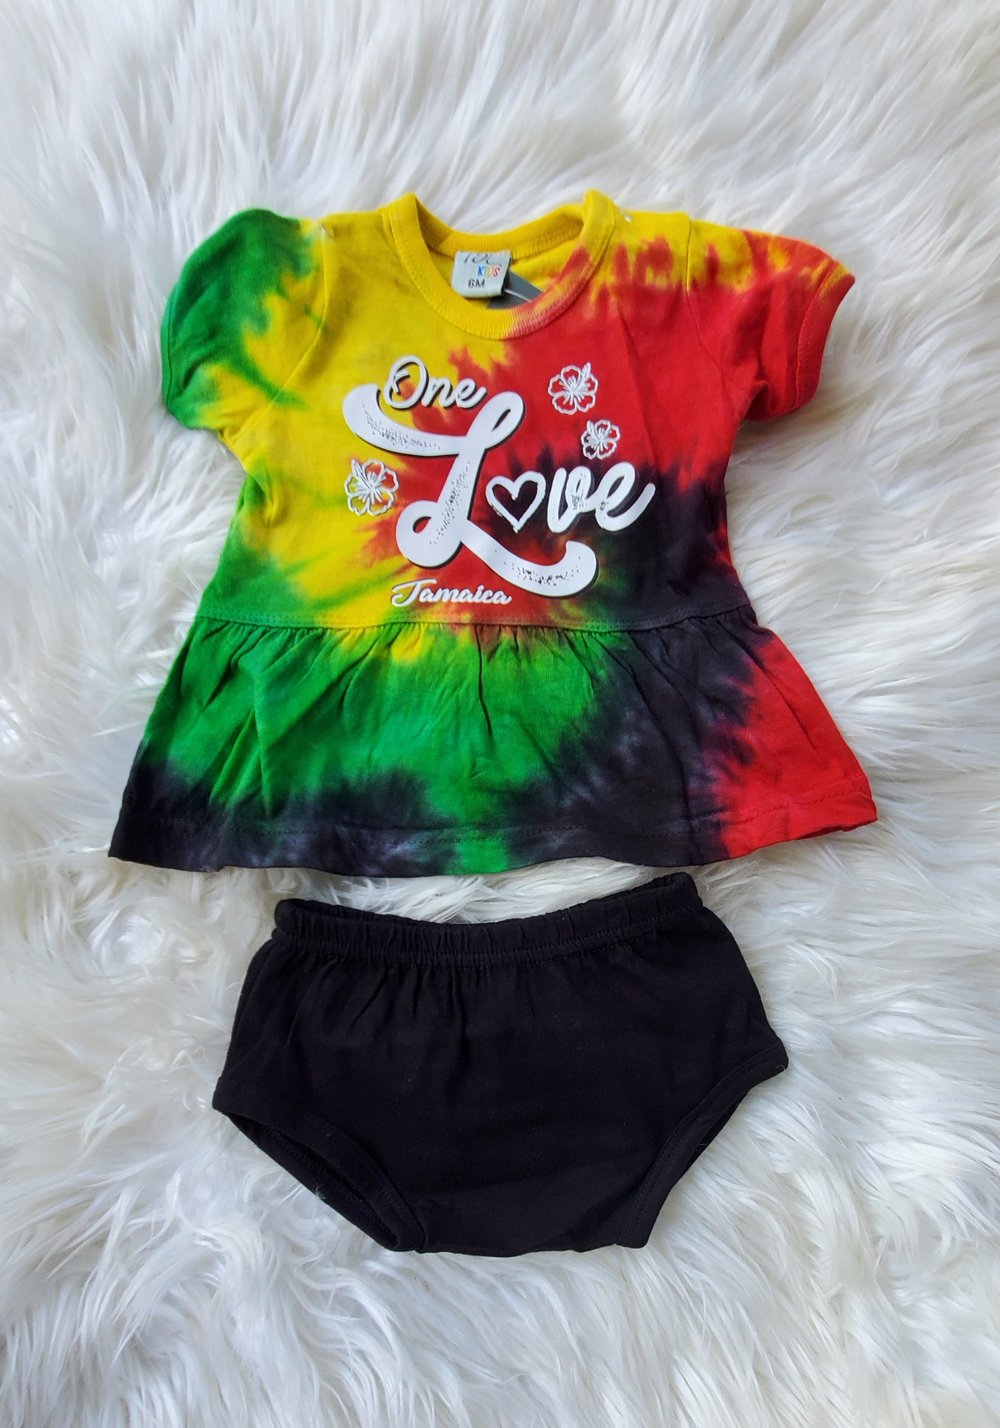 OneLove Jamaica rasta babygirls outfit 